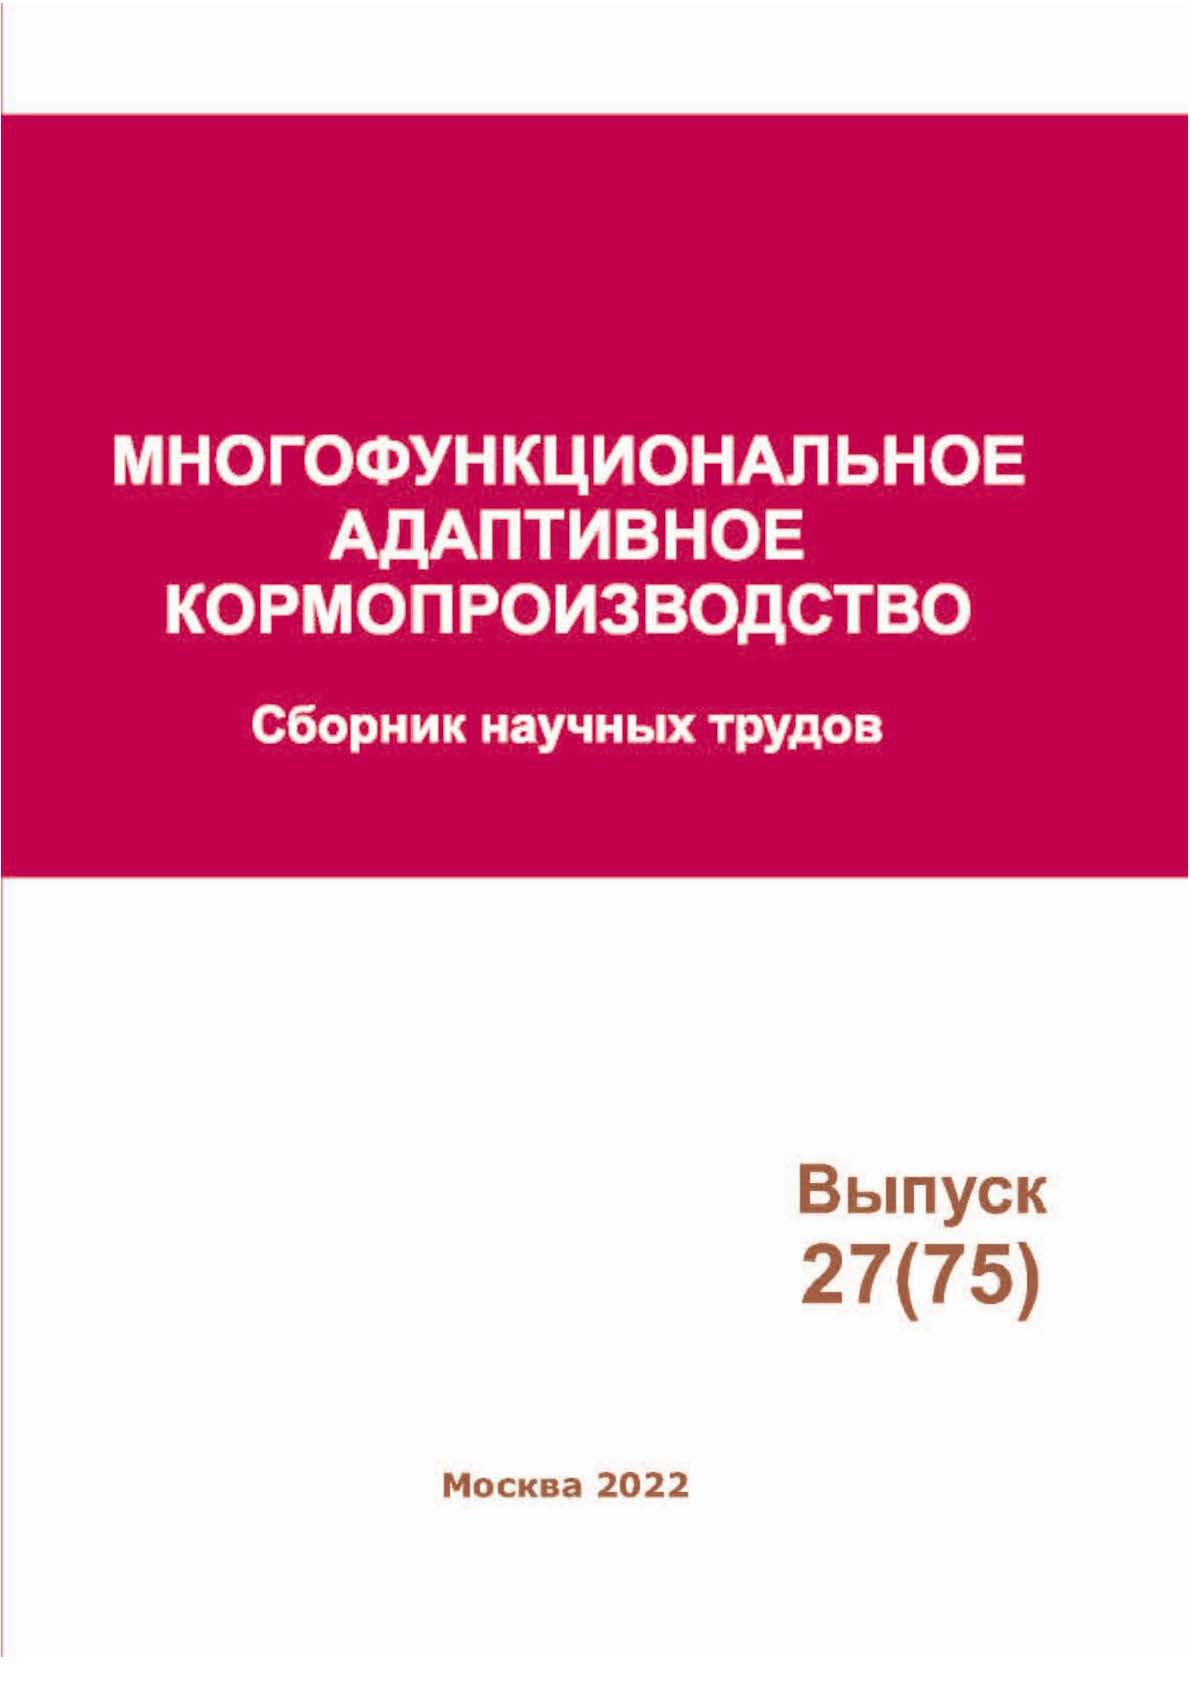             Многофункциональное адаптивное кормопроизводство № 27 (75)
    